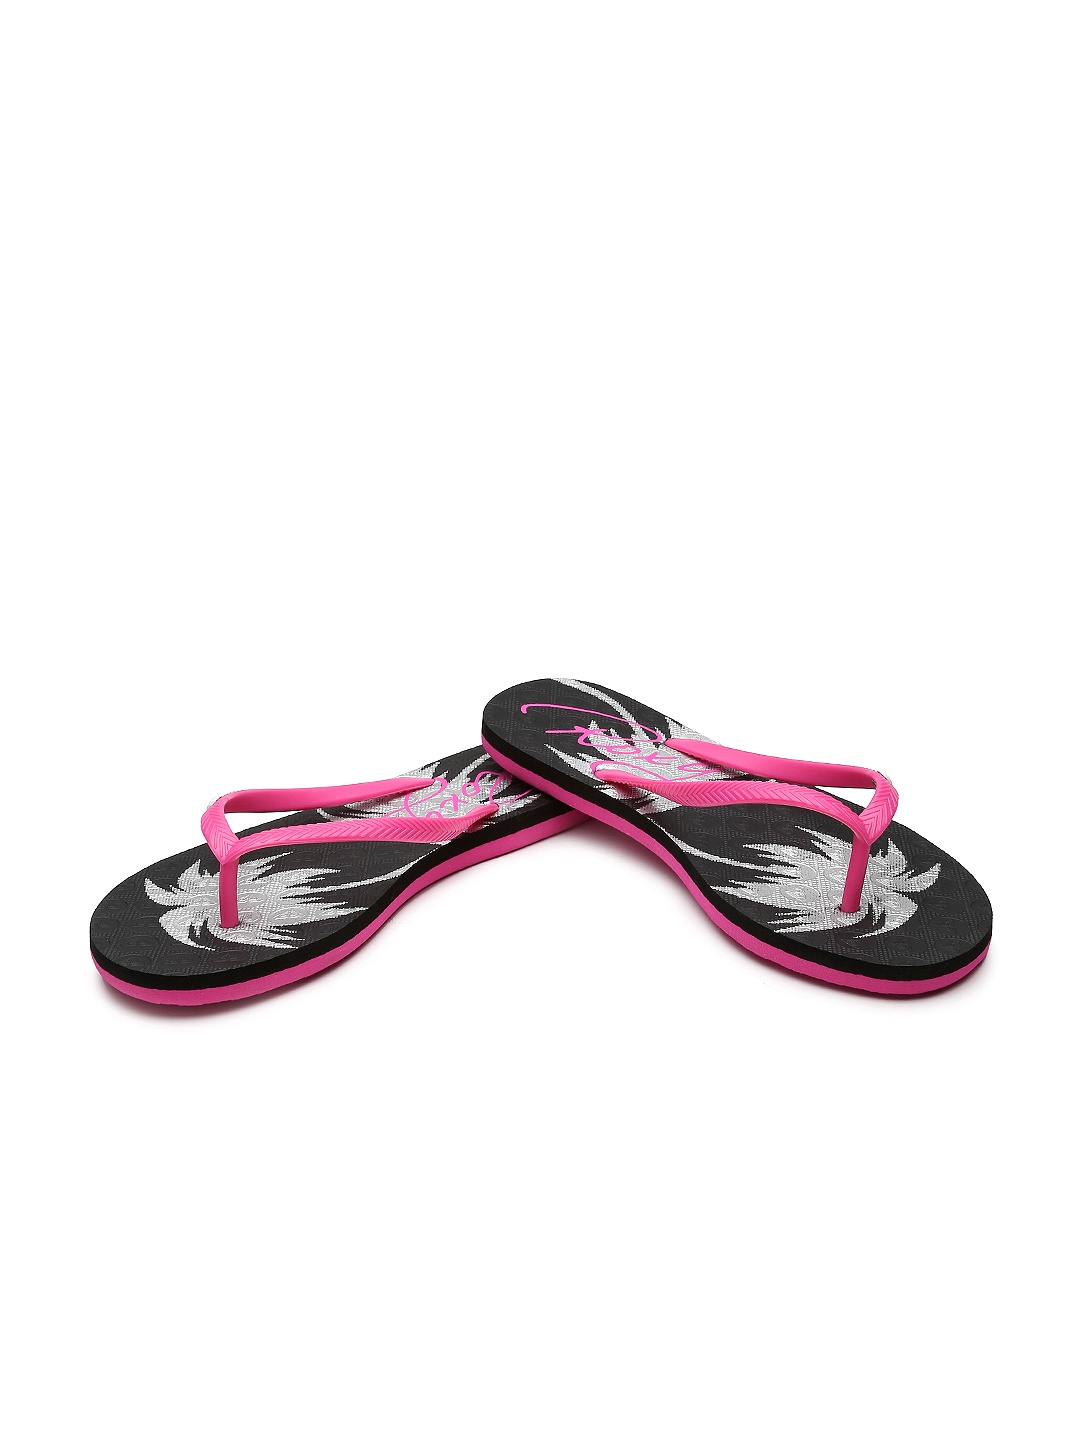 ... Details More Flip Flops by roxy More Pink Flip Flops More Flip Flops